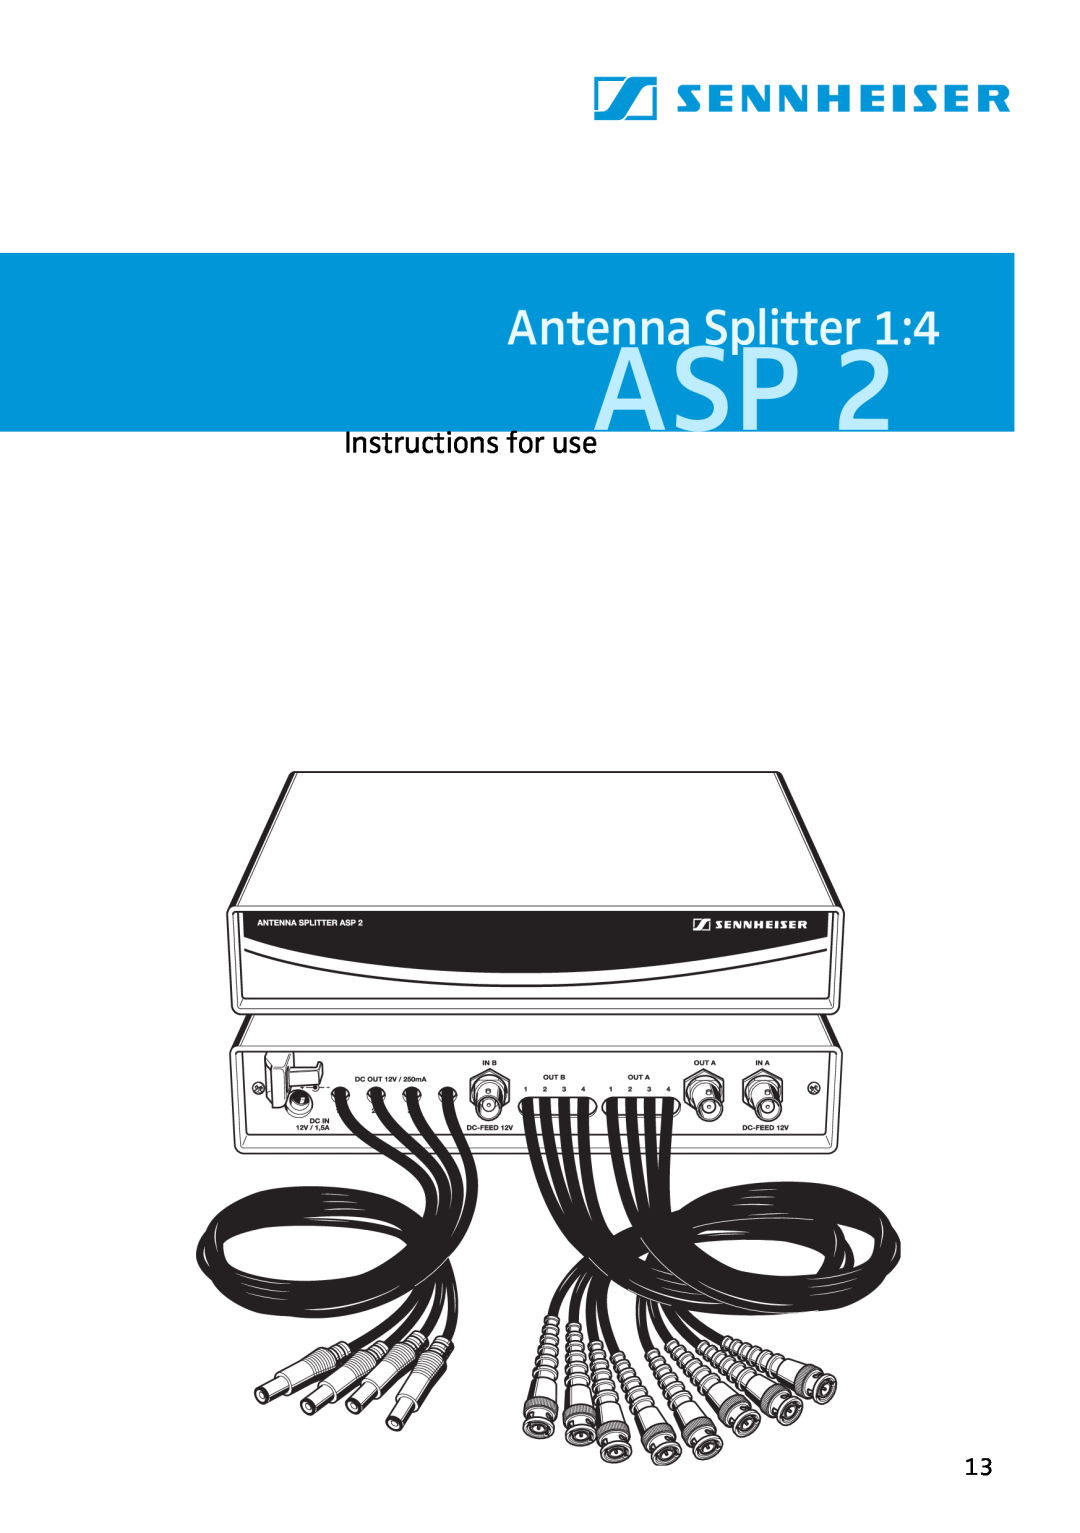 Sennheiser ASP 2 manual Antenna Splitter, Instructions for use 